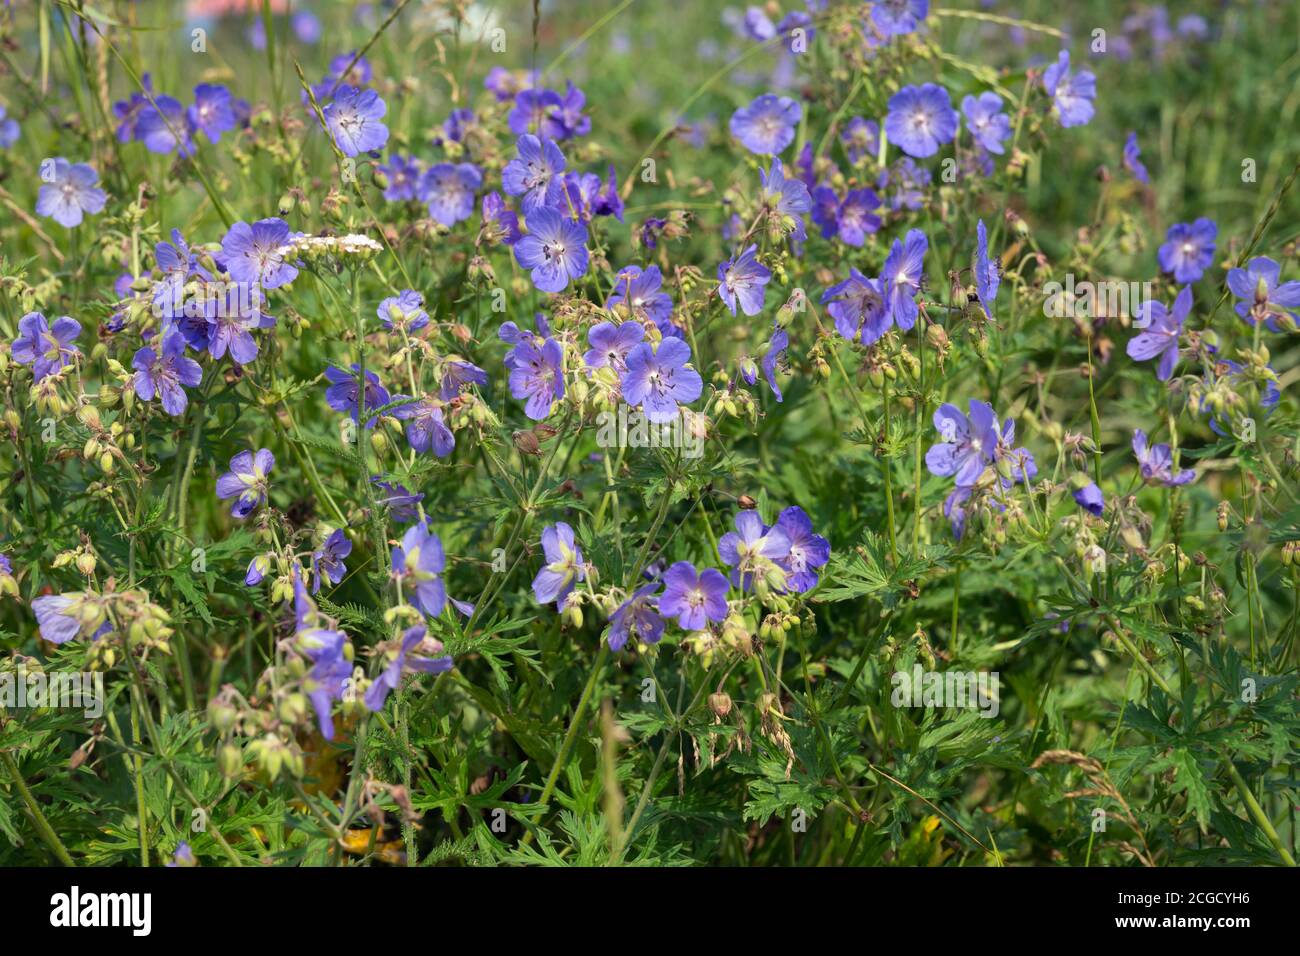 Viele Blumen von Wiesenschnabel {Geranium pratense} blühen auf einer grünen Wiese. Stockfoto